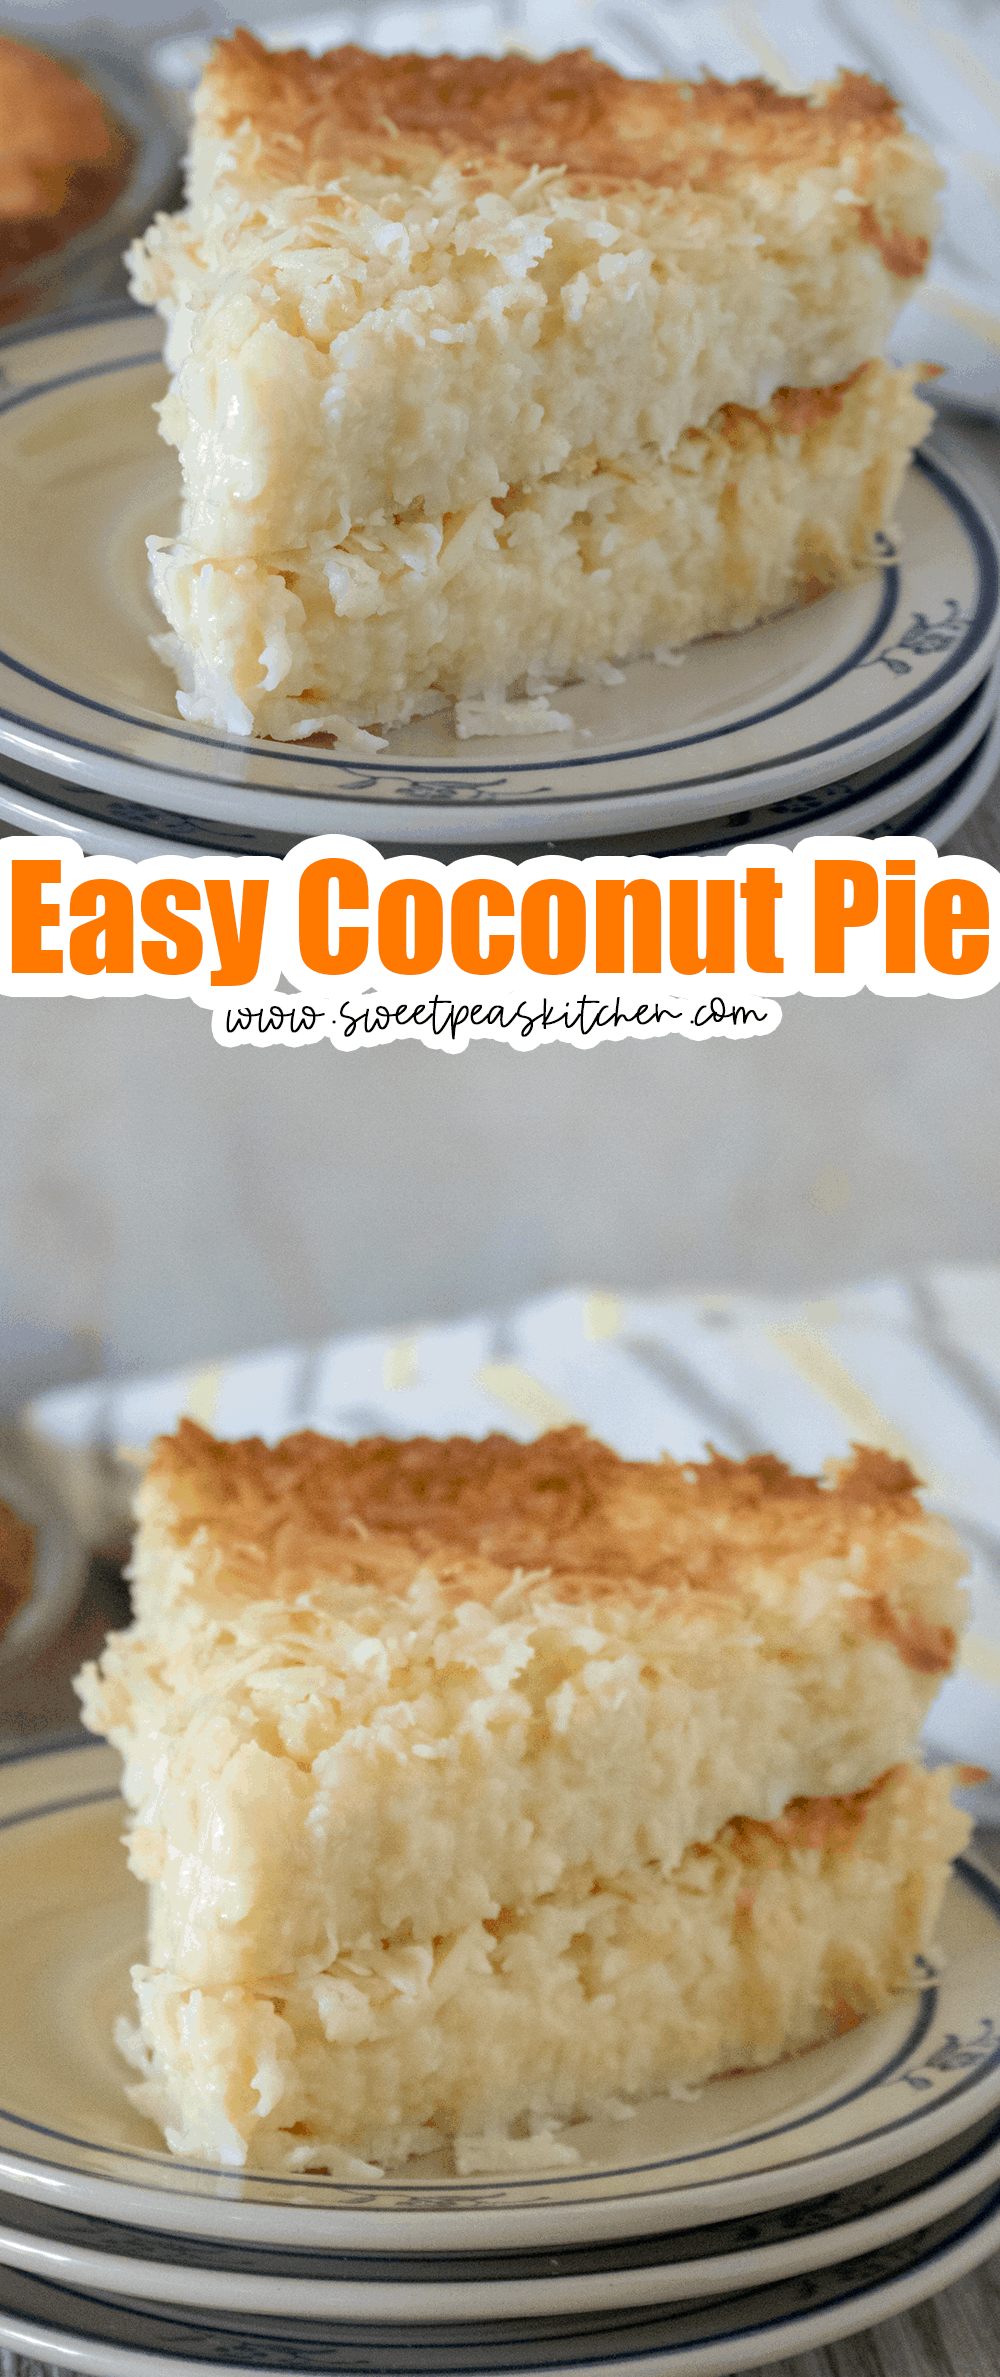 Easy Coconut Pie